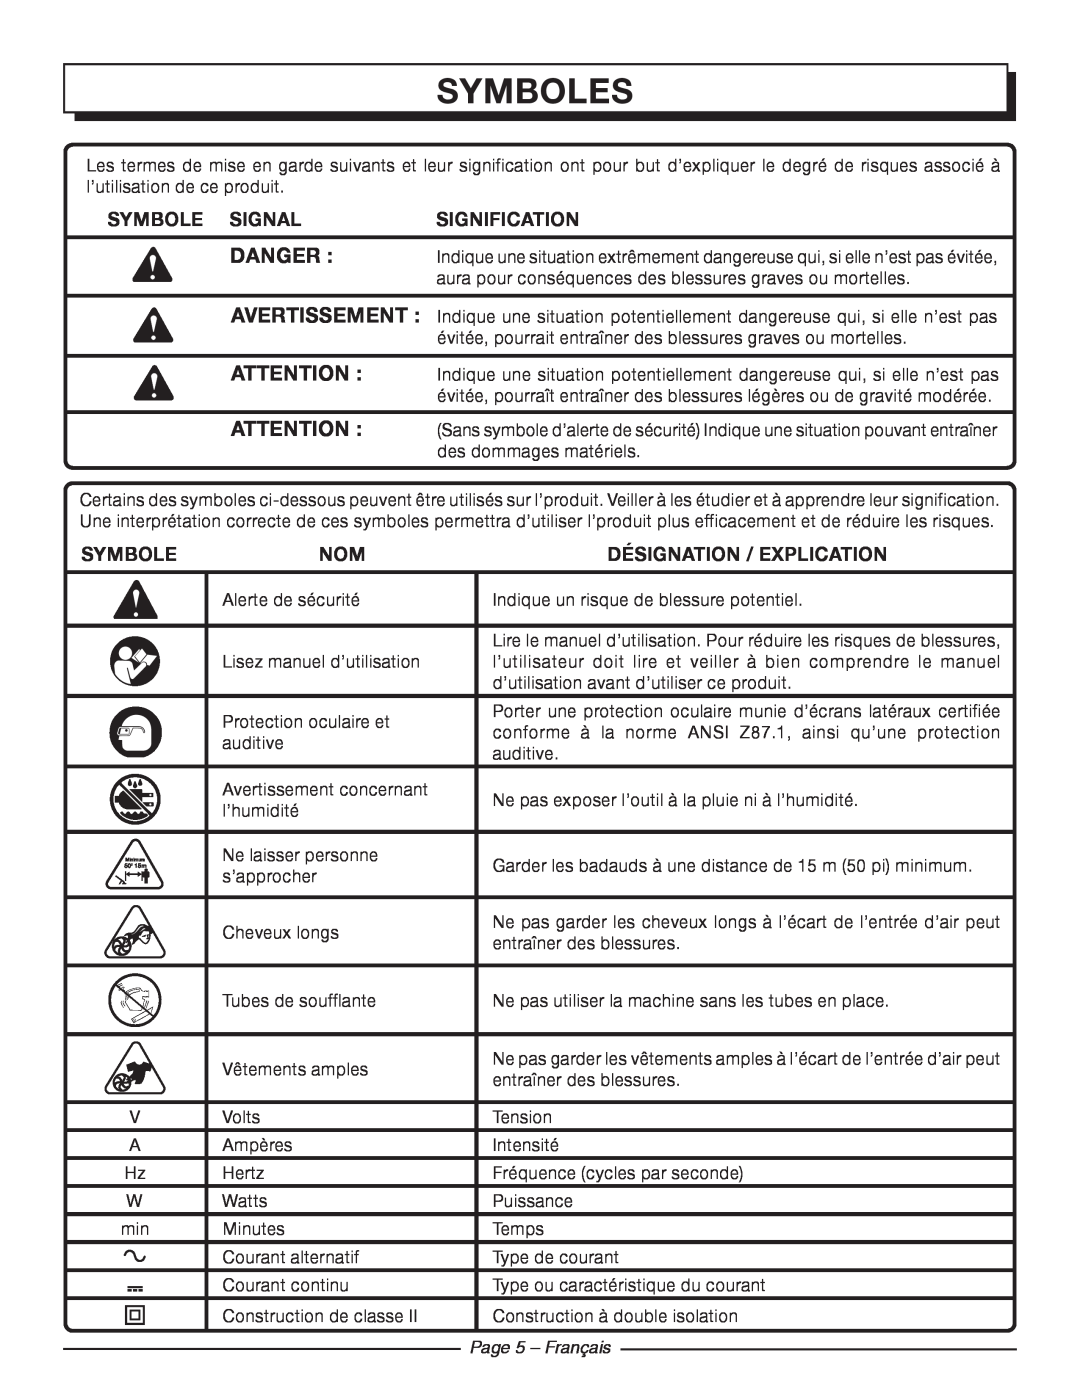 Homelite UT42100 Symboles, Danger , Symbole Signal, sIGNIFICATION, Désignation / Explication, Page 5 - Français 